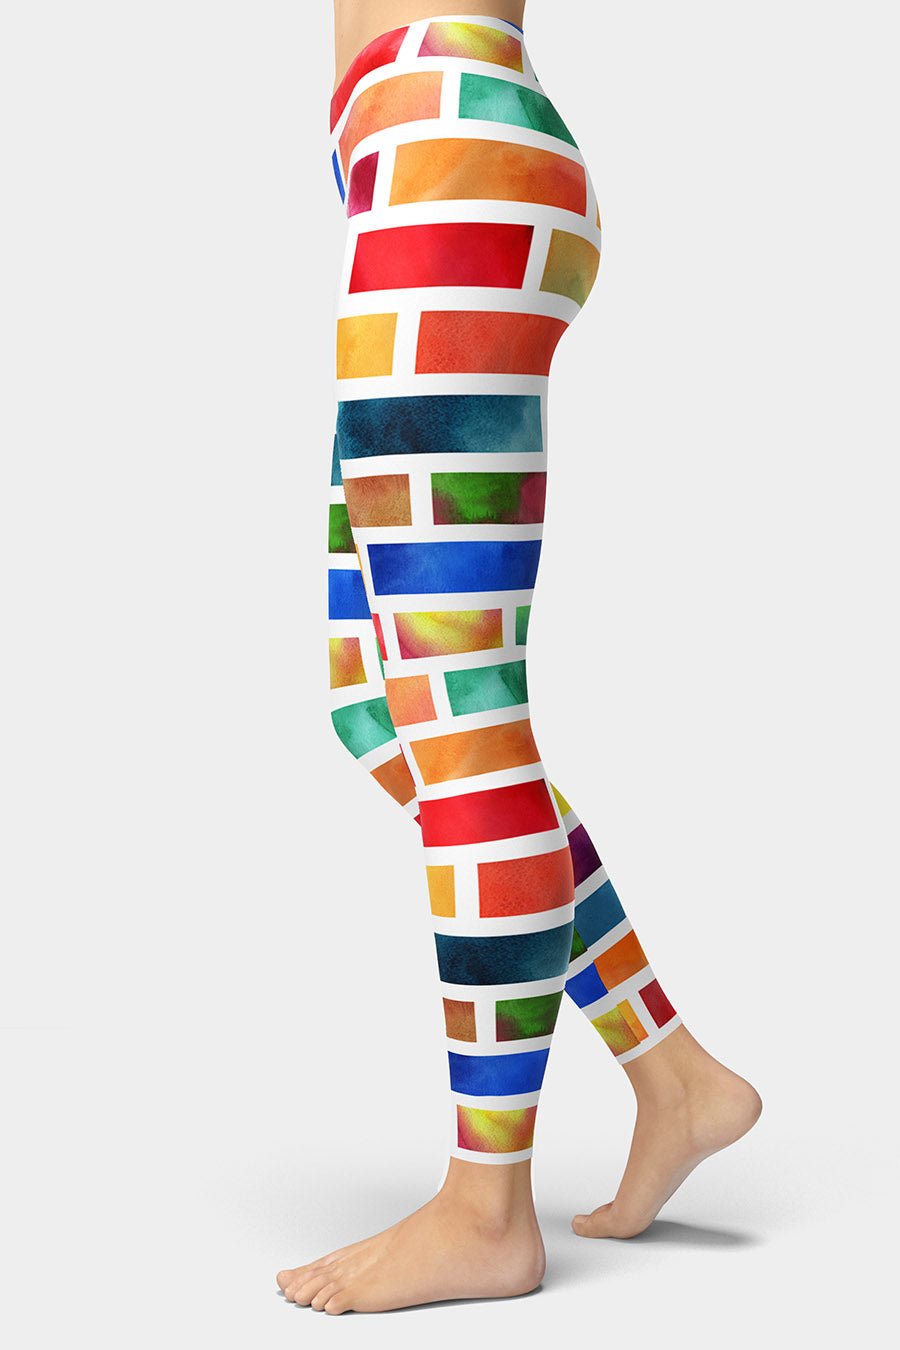 Watercolor Bricks Leggings - SeeMyLeggings